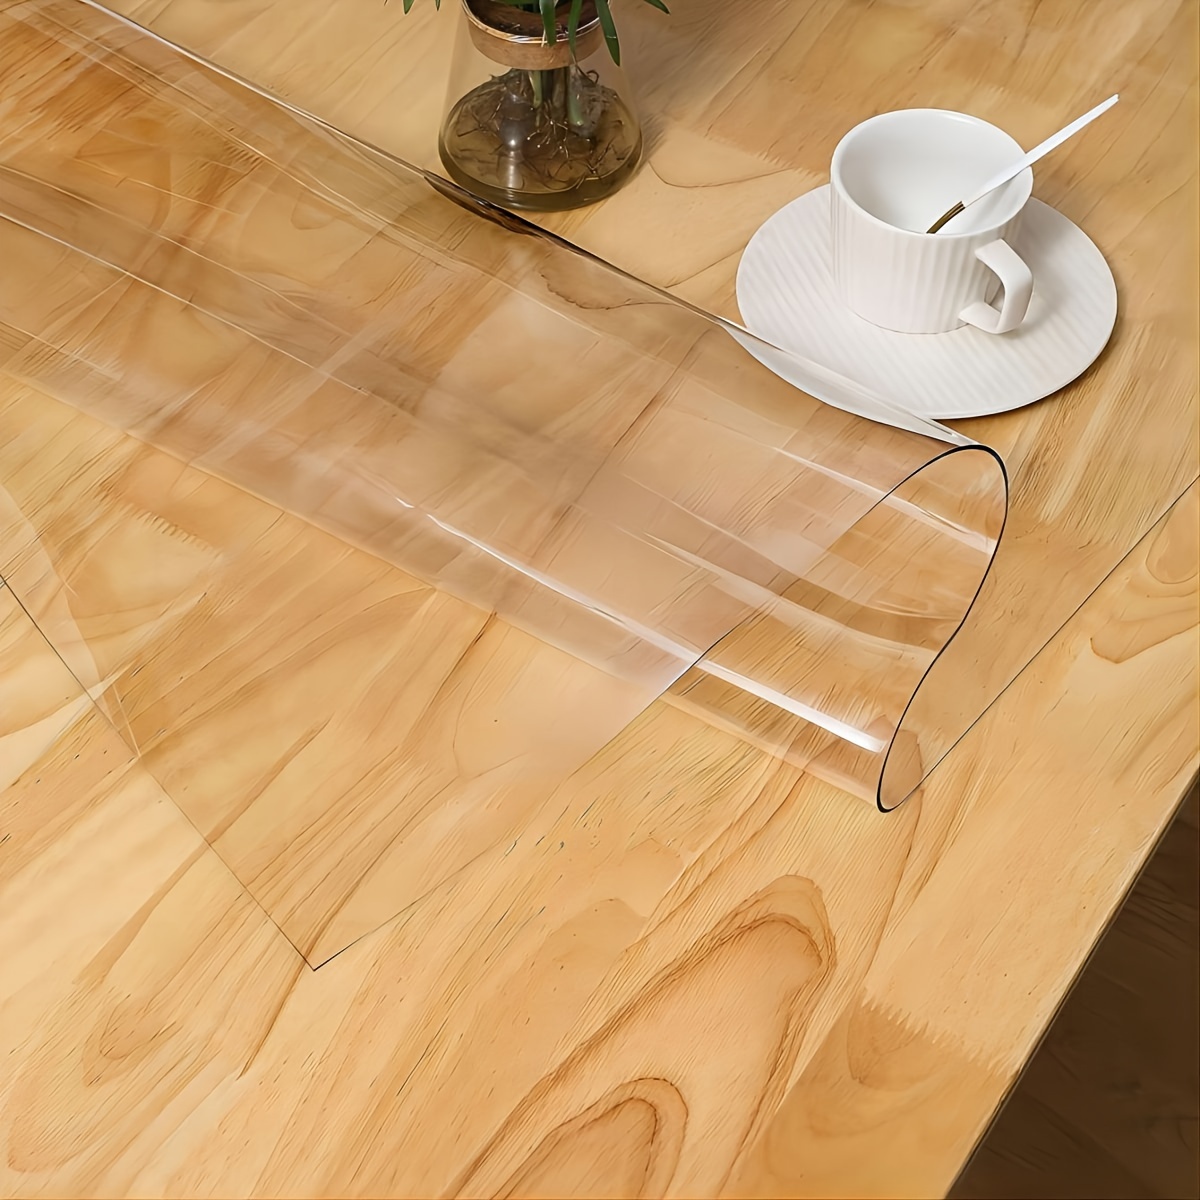  Zlovne Protector de mesa transparente mate, mantel transparente  de plástico, protector de mesa de 0.069 pulgadas de grosor, protector de  mesa para cocina, tapete rectangular para silla de piso duro, fácil